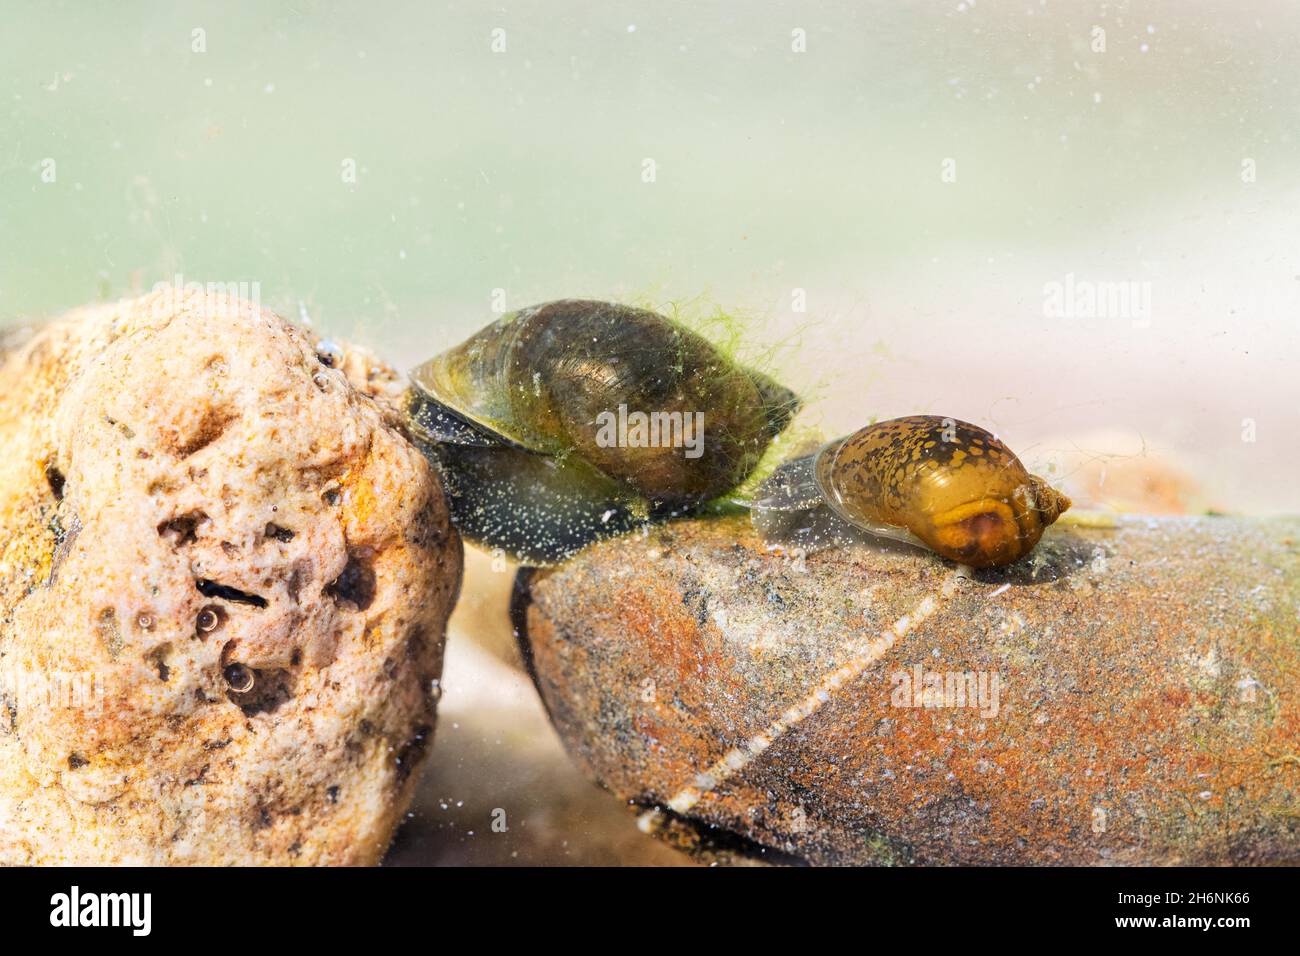 bladder snails